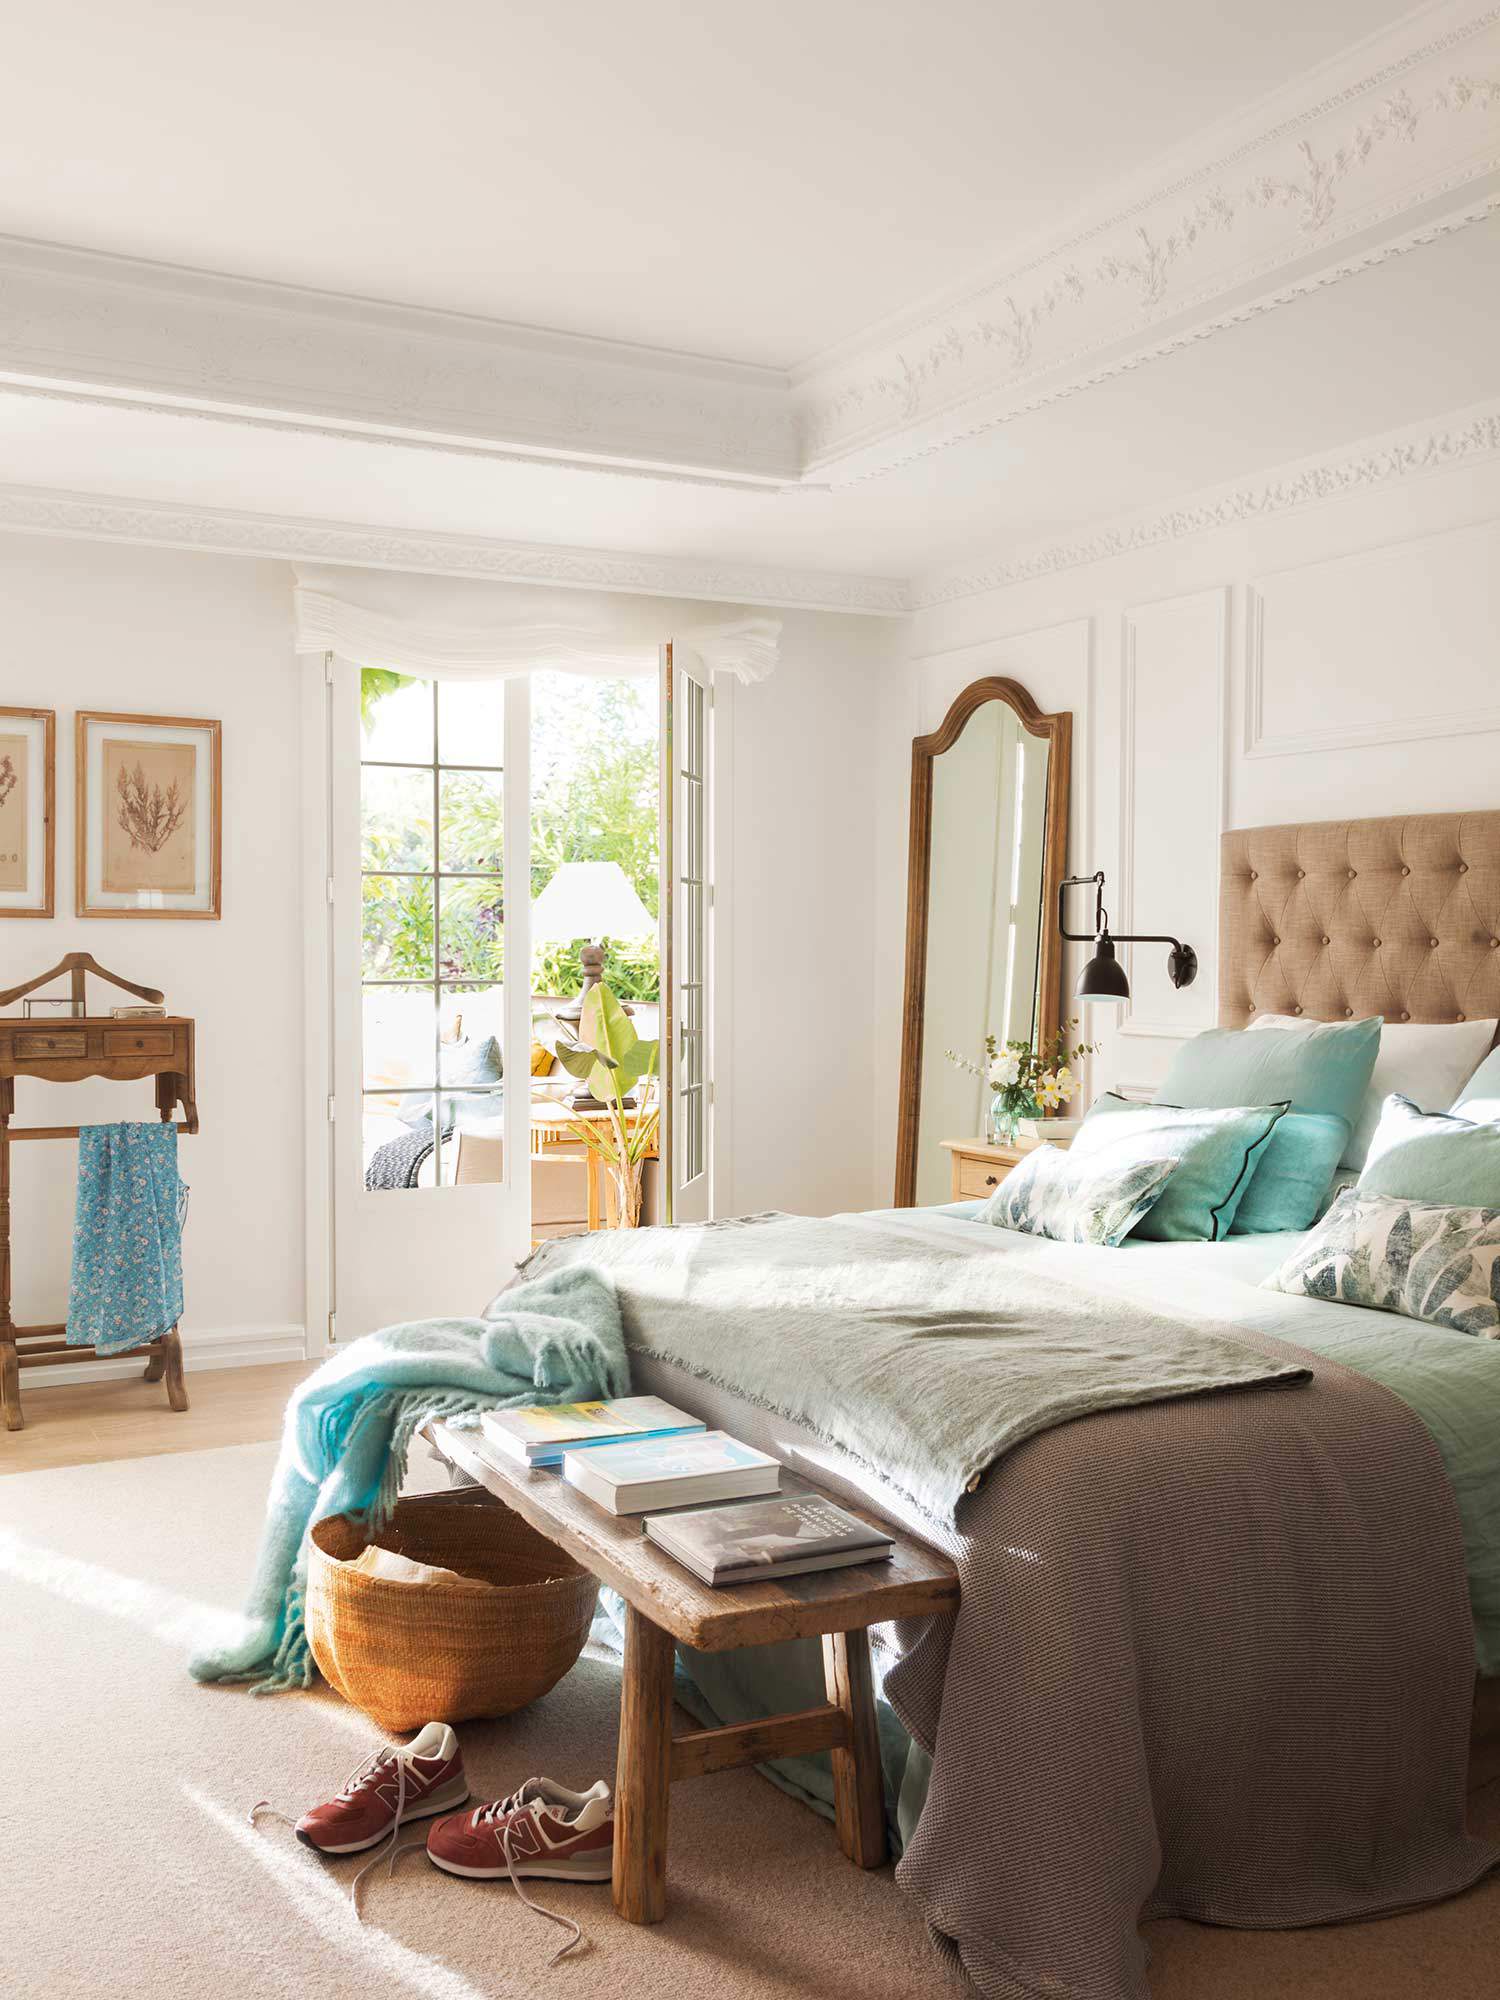 Dormitorio clásico con cabecero de capitoné y banquito rústico de madera a los pies de la cama